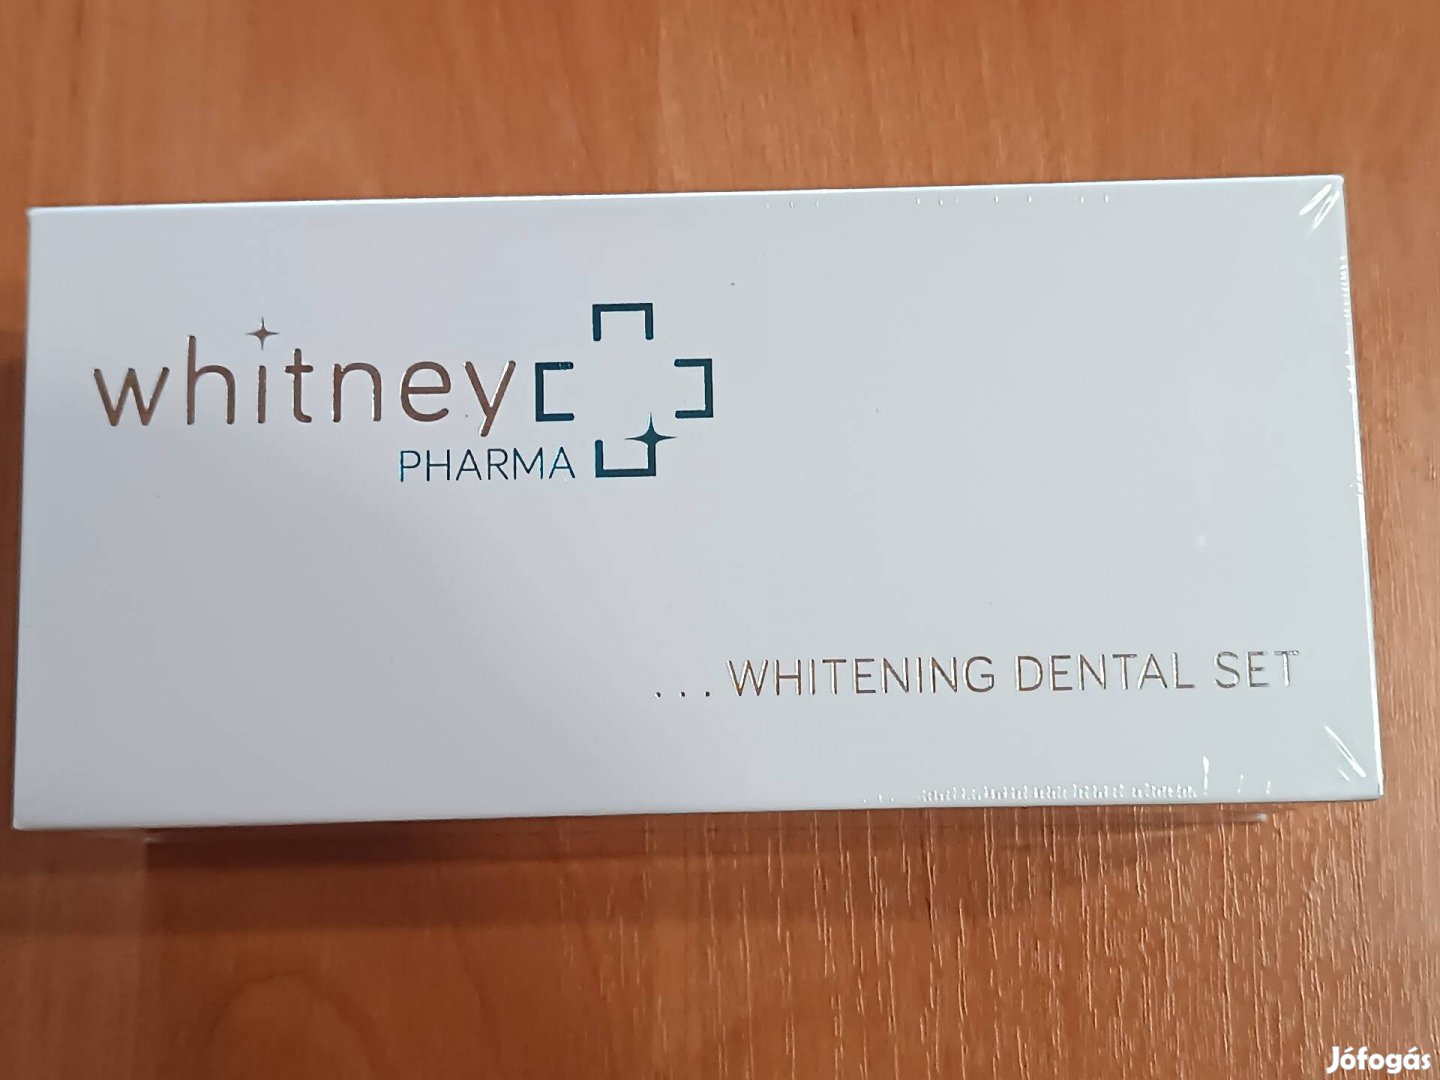 Whithney Pharma fogfehérítő szett 